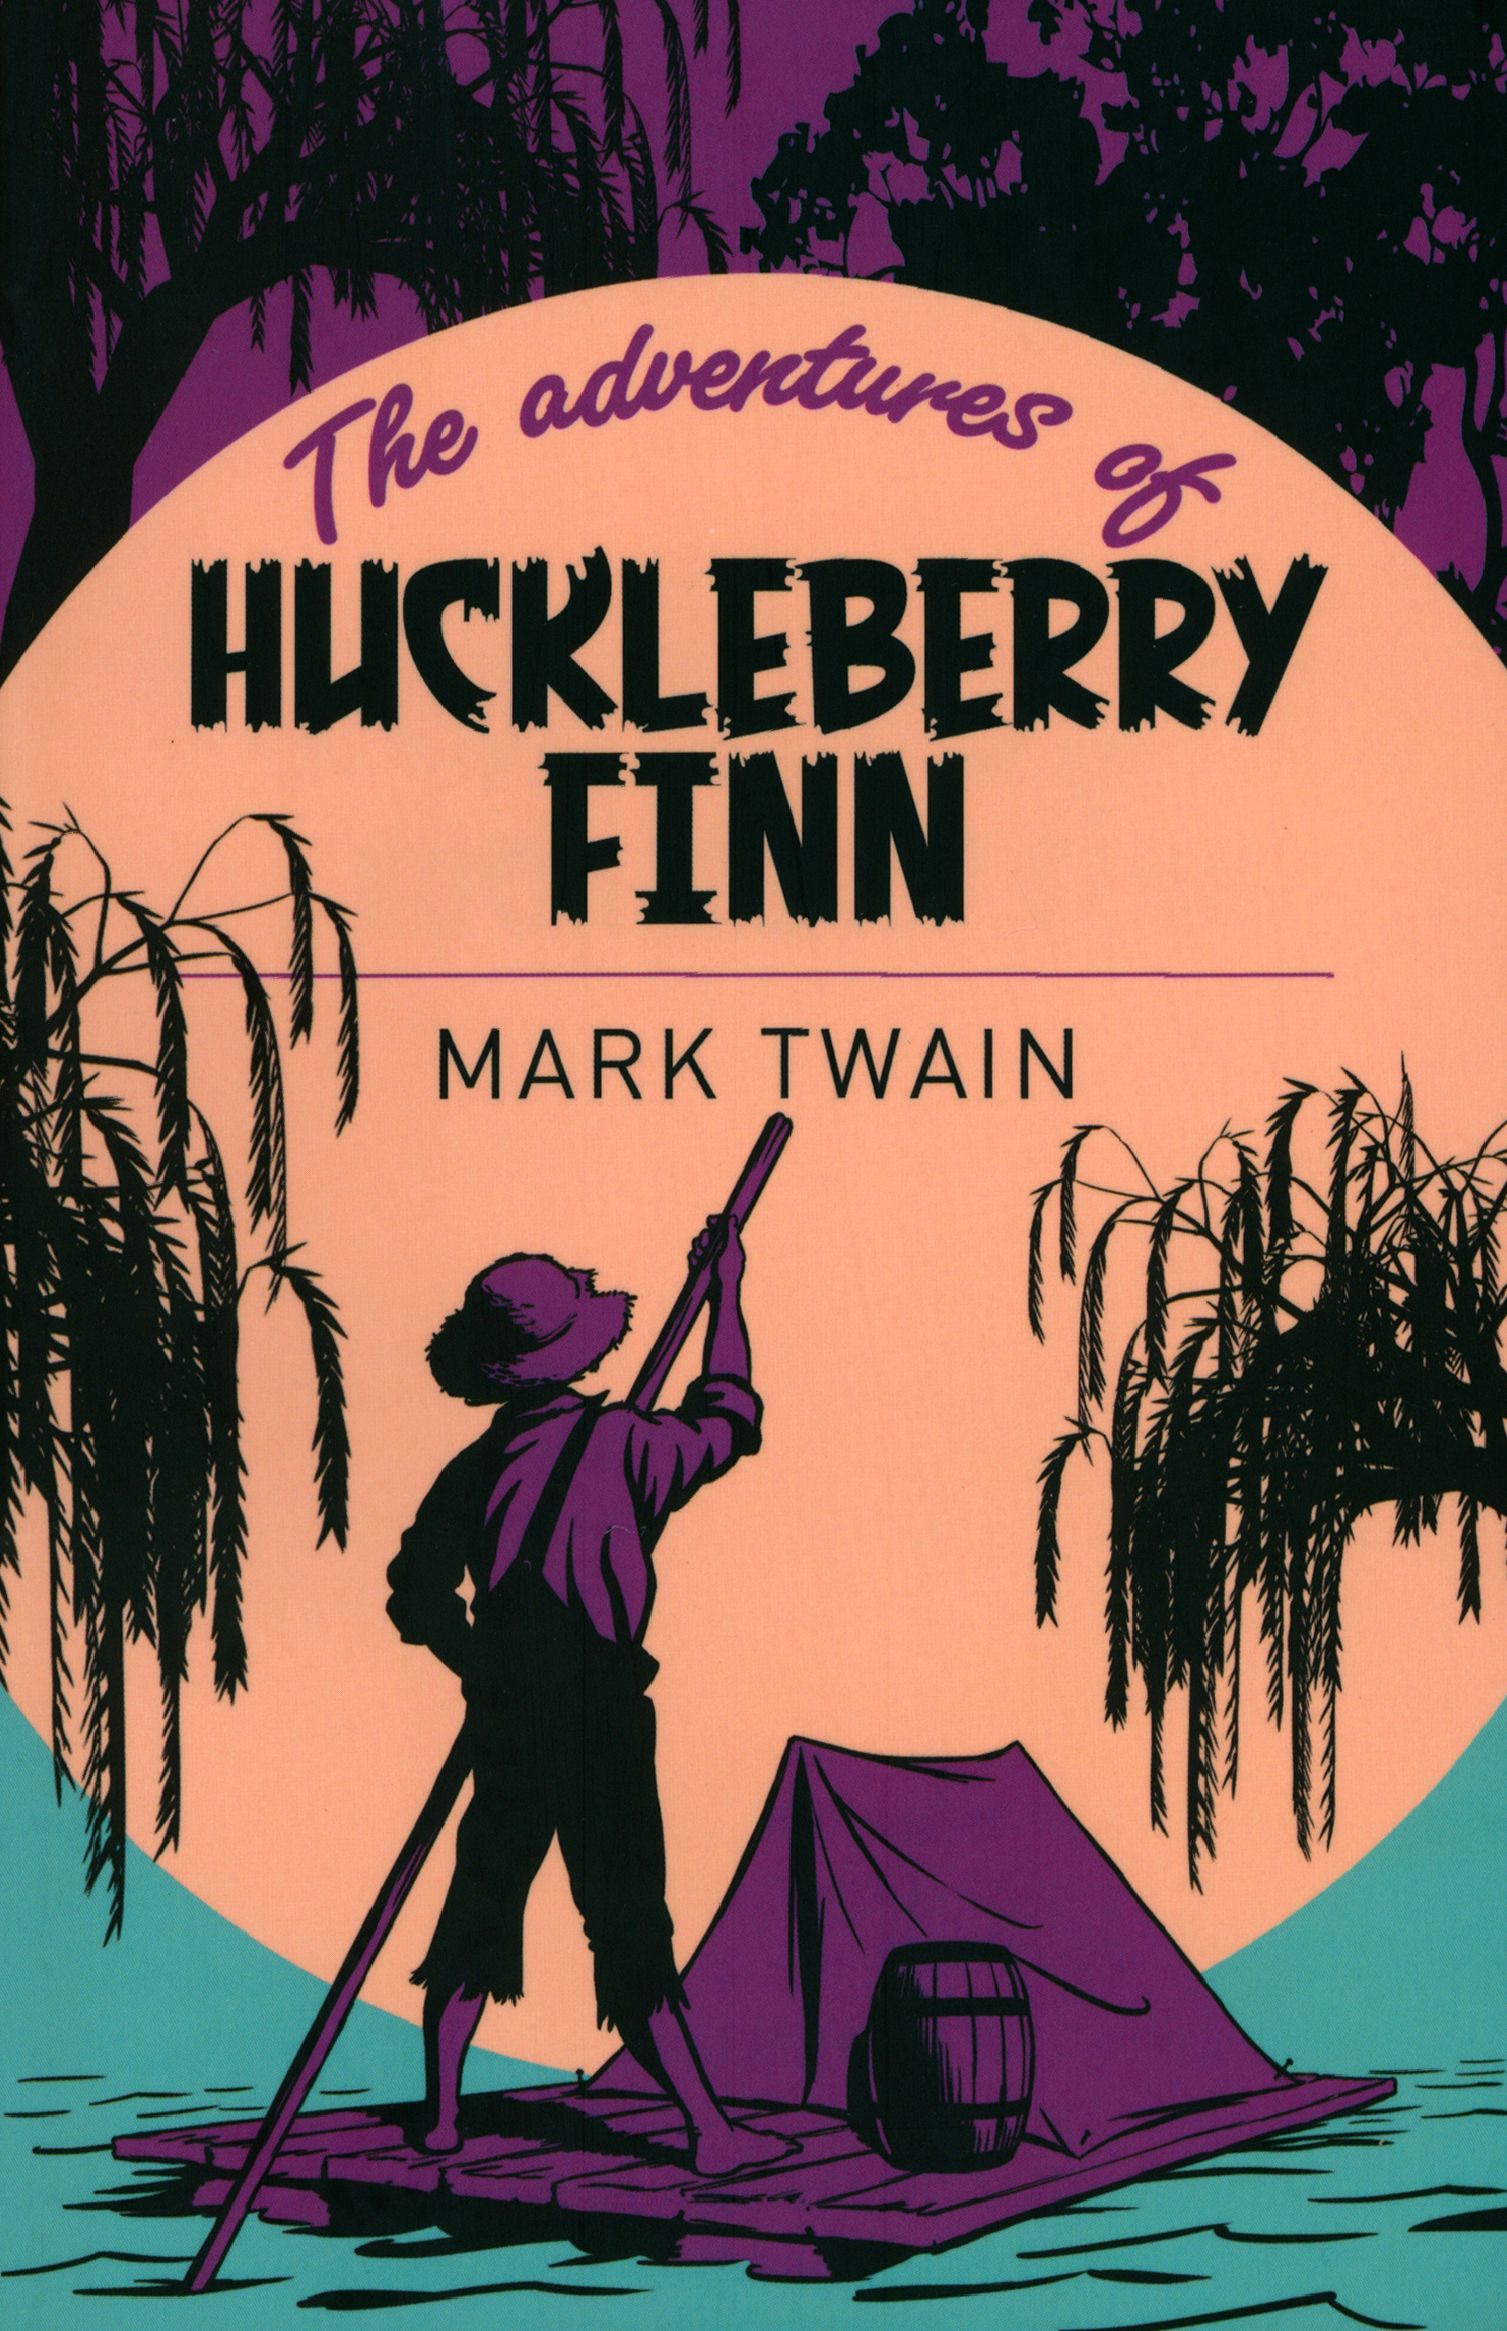 The adventures of huckleberry finn mark twain. Adventures of Huckleberry Finn. Mark Twain Huckleberry Finn. Huckleberry Finn book.